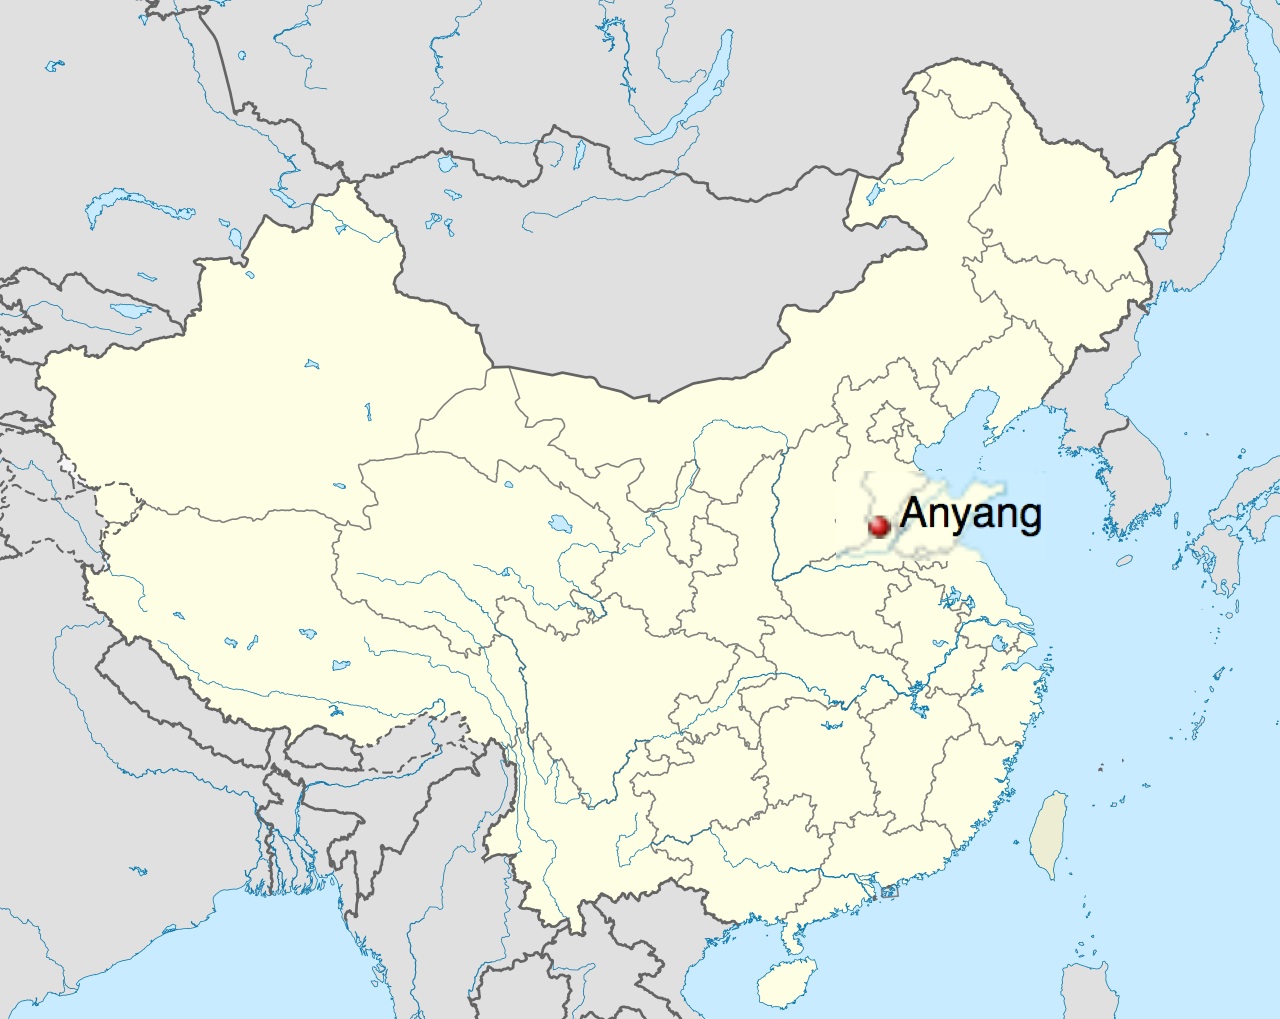 Map of China - Anyang